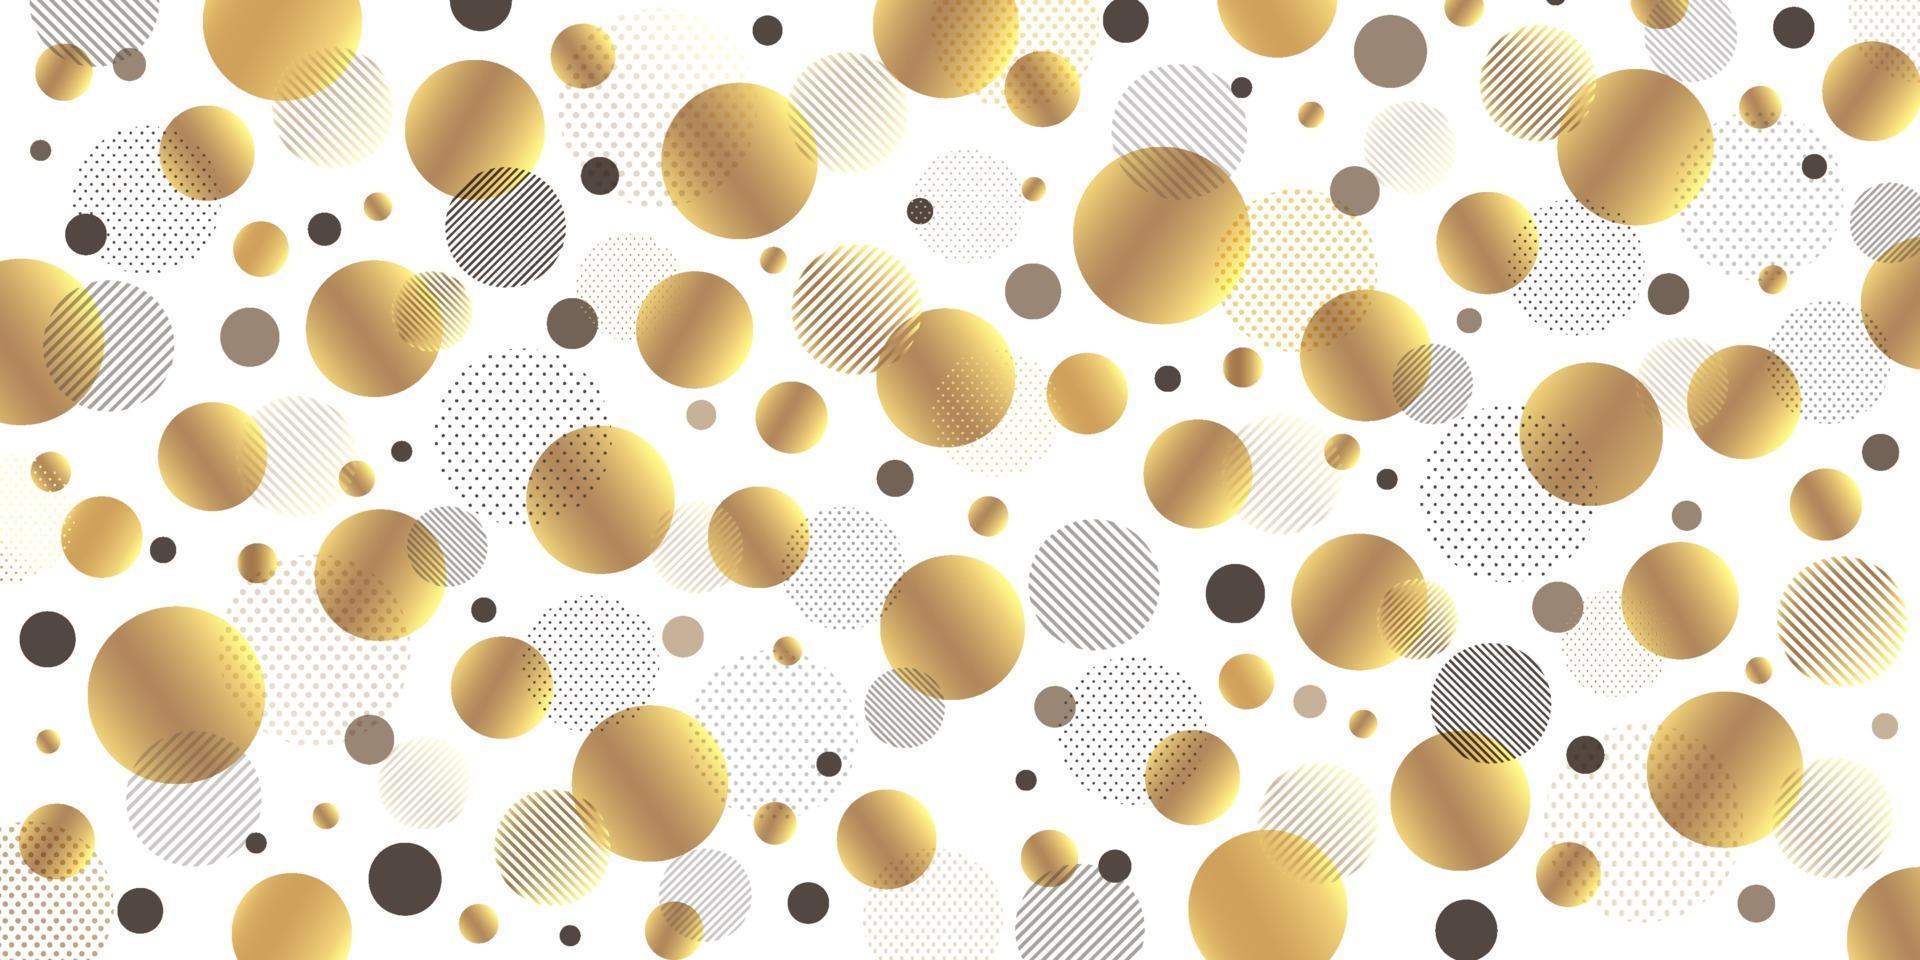 astratto moderno cerchio dorato, linee nere in diagonale con motivo a punti neri e oro su sfondo bianco. design di lusso ed elegante. illustrazione vettoriale